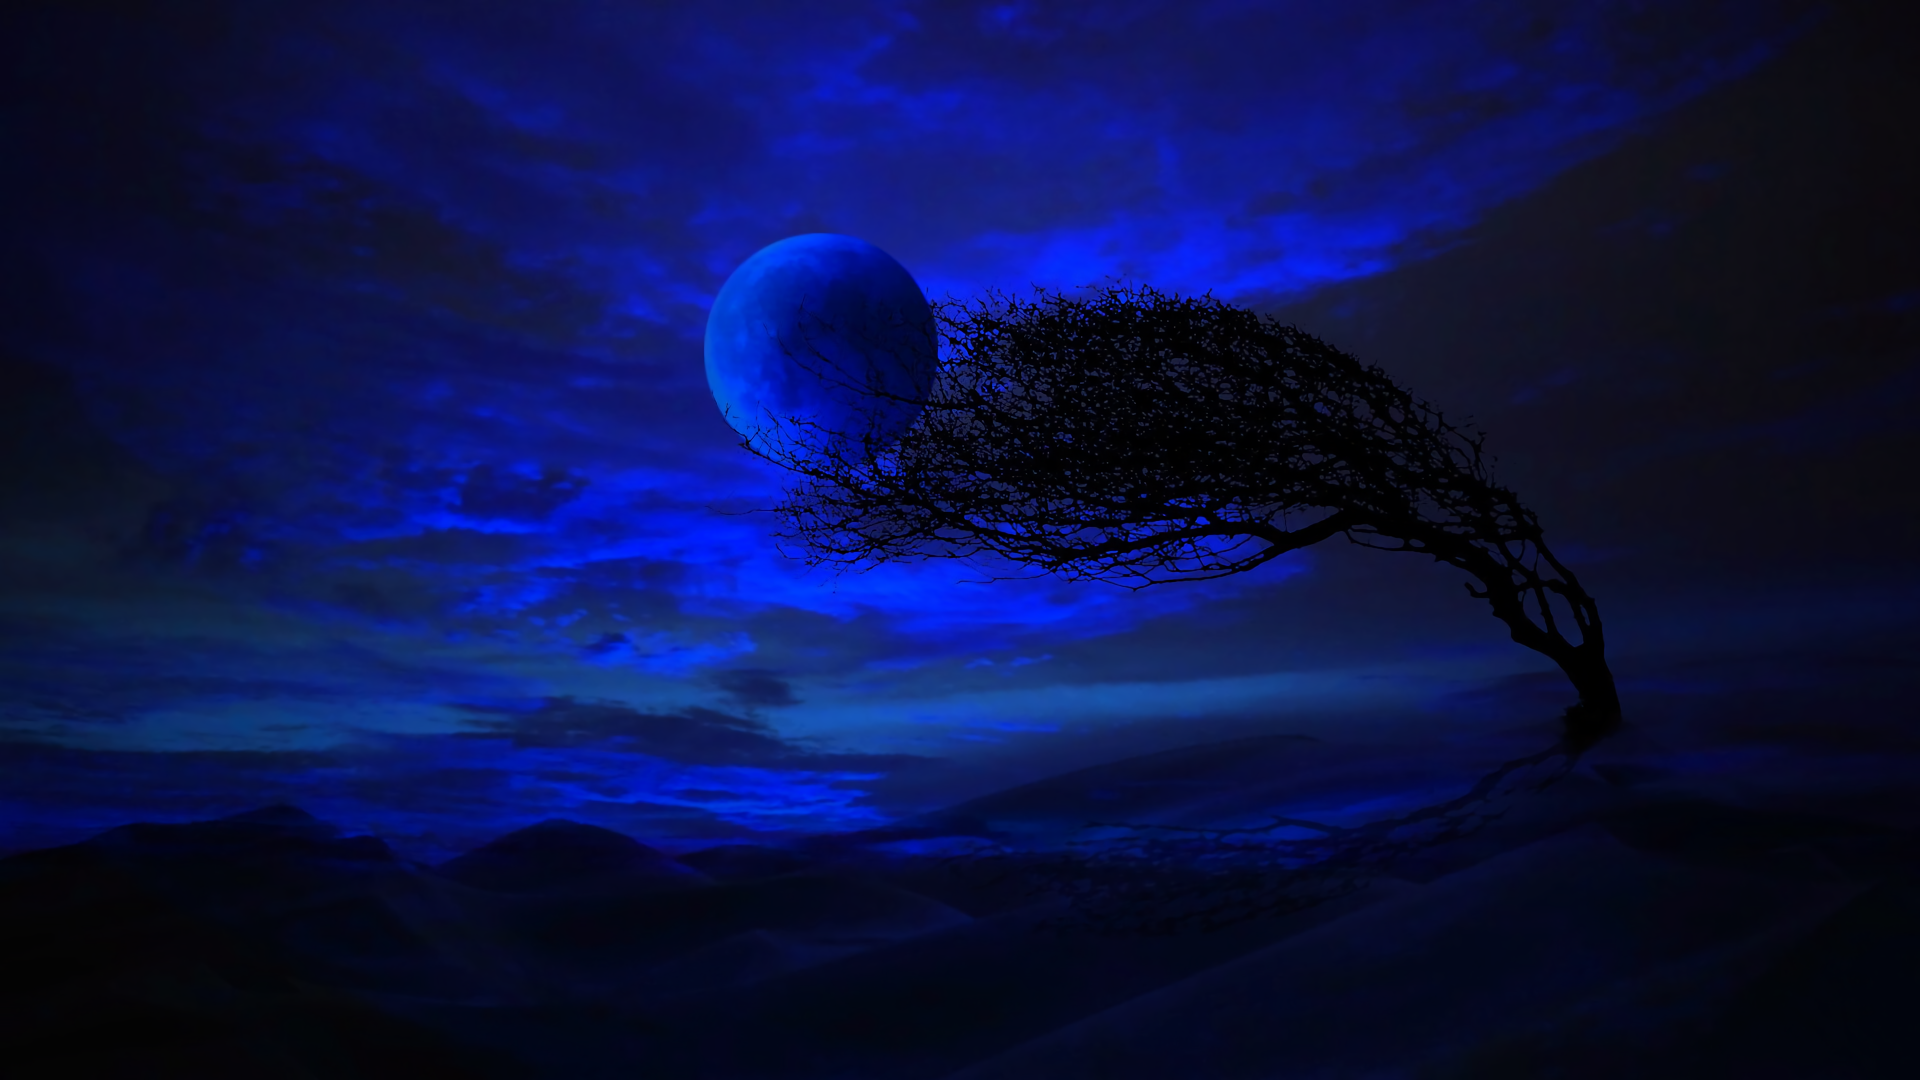 Trăng xanh bao quanh bởi bầu trời đầy sao sẽ làm say lòng bạn bởi vẻ đẹp mộng mơ ấy. Hãy ngắm nhìn bức ảnh này và hòa mình vào không gian lãng mạn của trăng trong đêm đầy tình cảm.